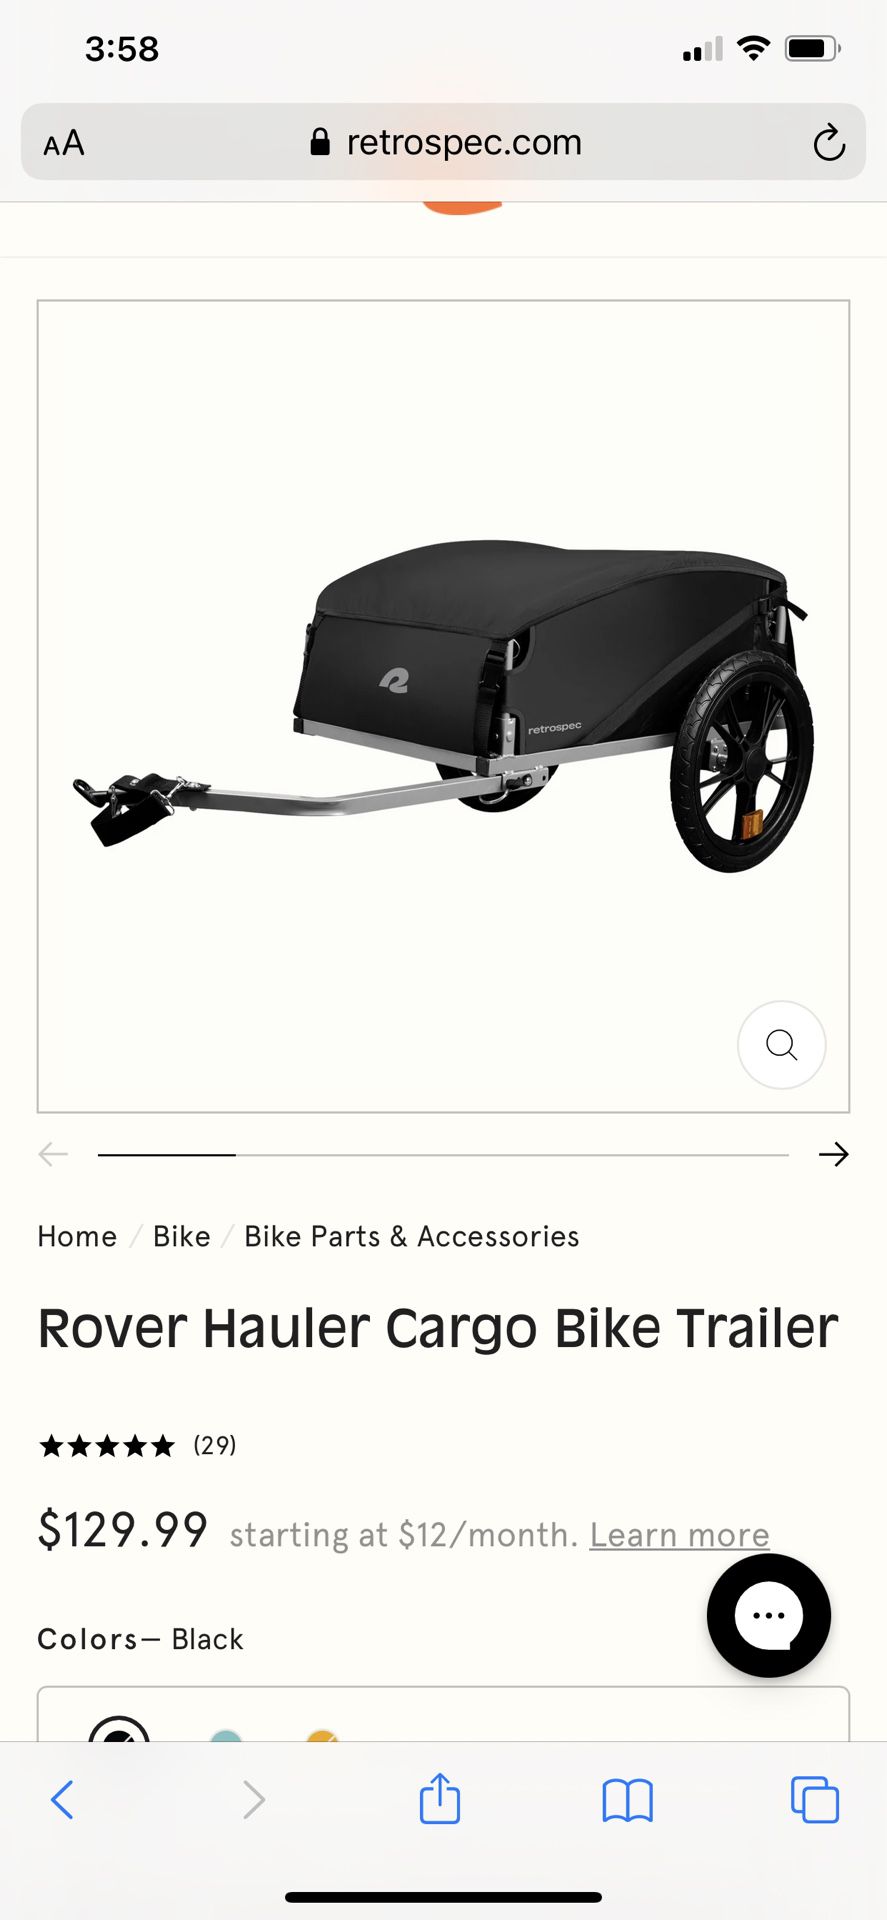 Retrospec Rover Hauler CIB Bike Trailer 80lb Cap